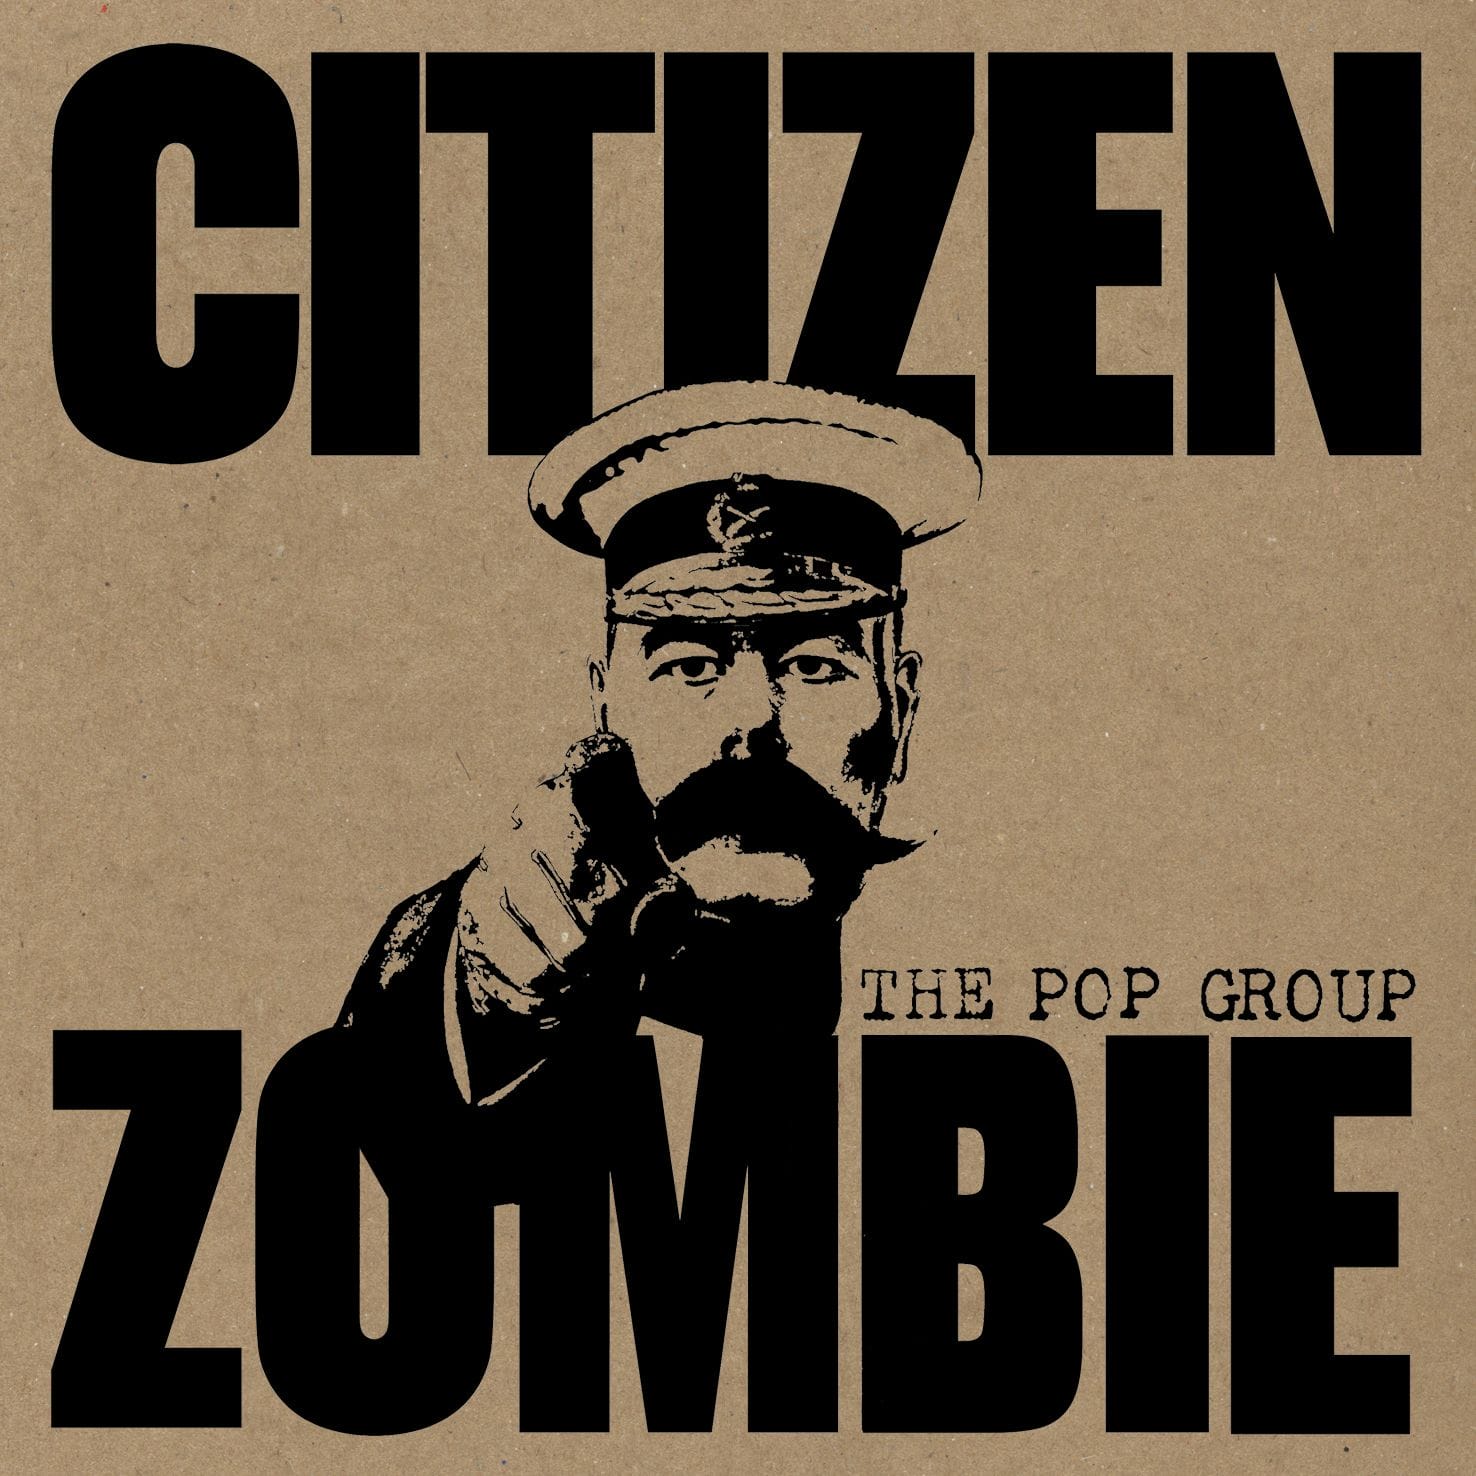 THE POP GROUP "Citizen Zombie" 3